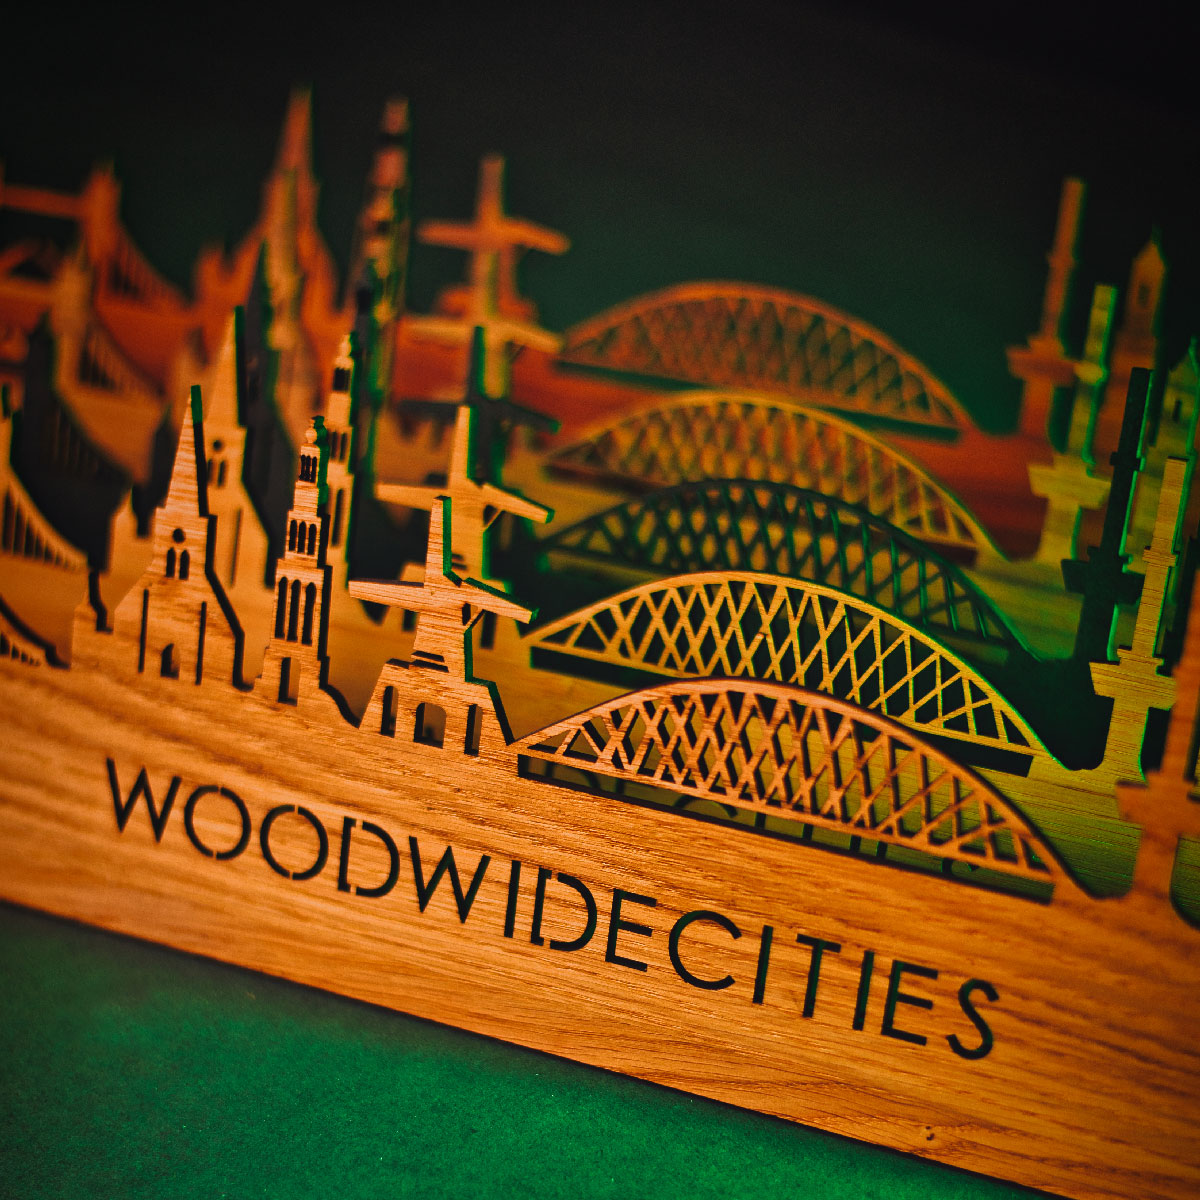 Skyline Klok Lommel Noten houten cadeau wanddecoratie relatiegeschenk van WoodWideCities